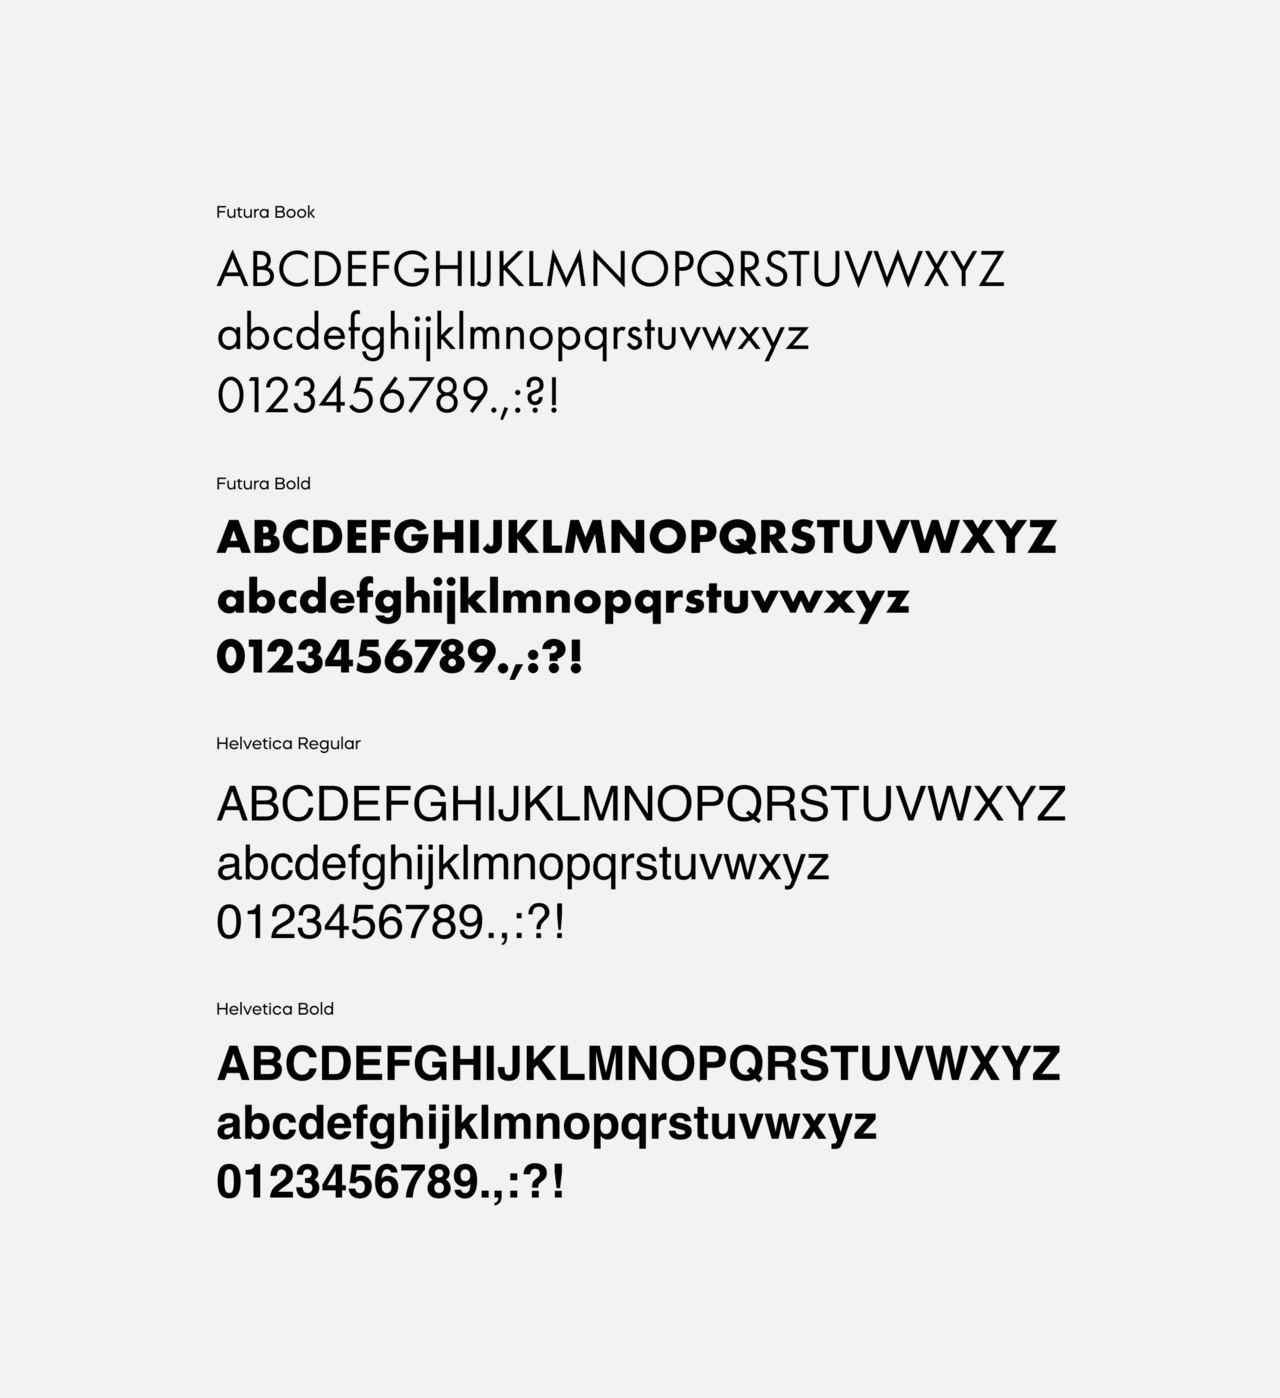 Übersicht der verwendeten Typografie Stile der Knauf App